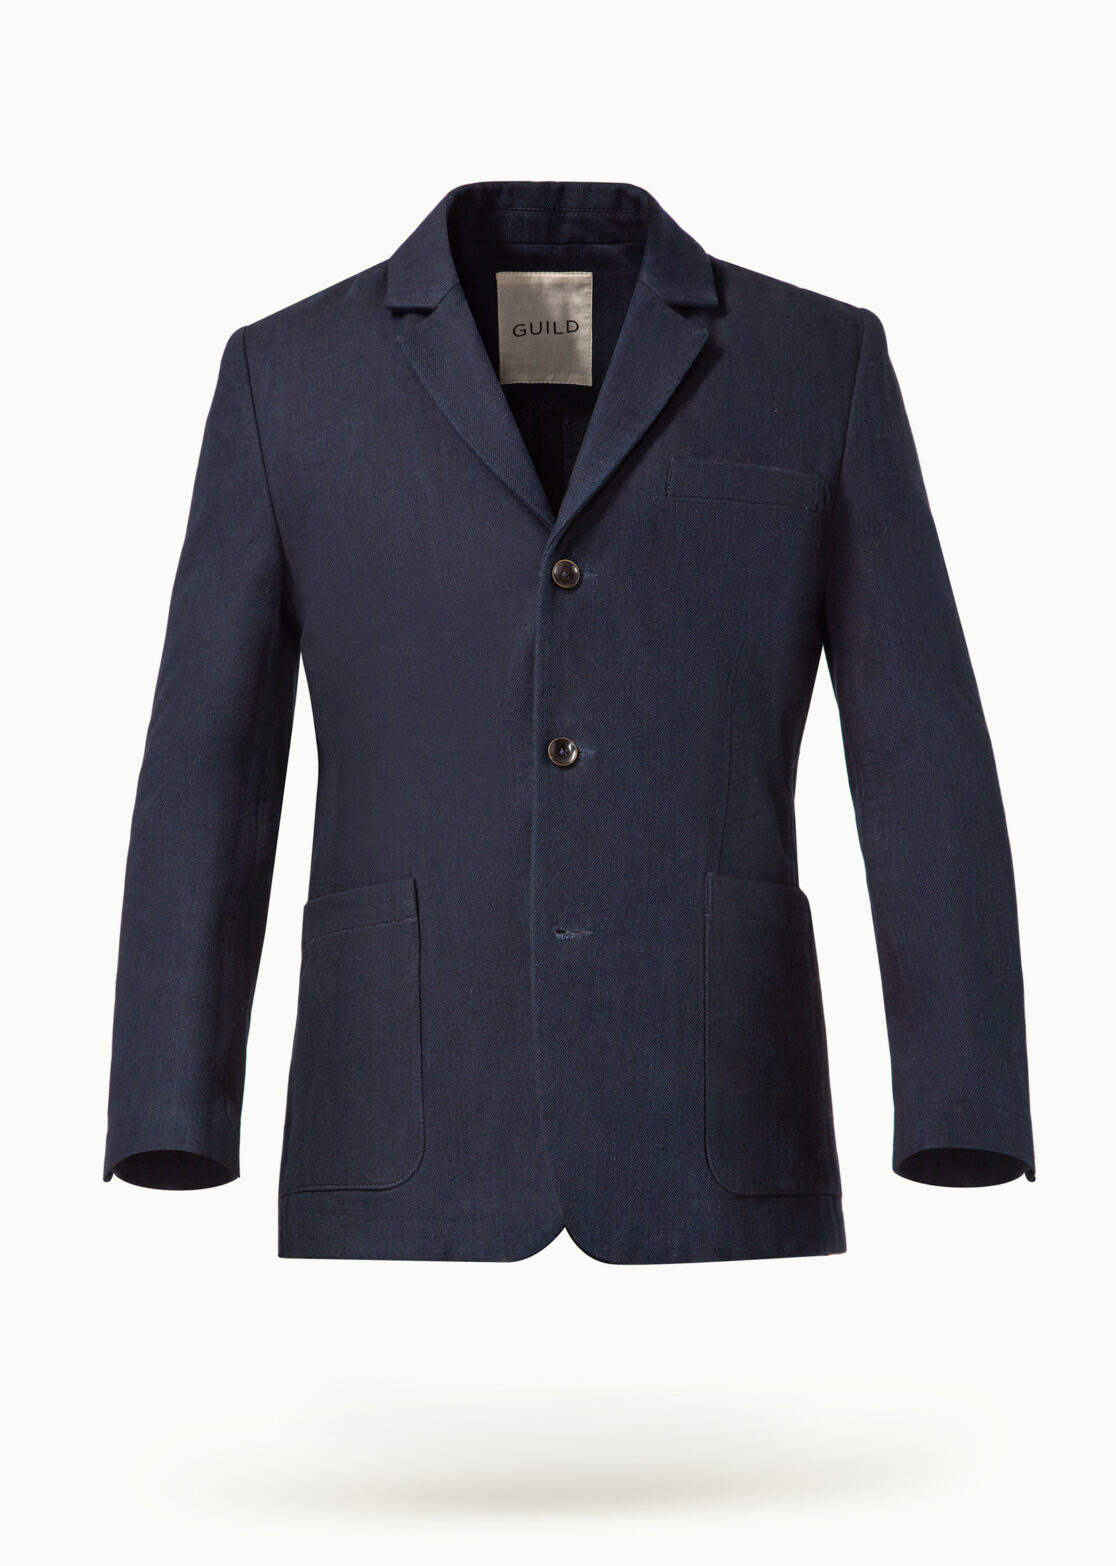 Men - Suit Jackets - Denim - Willidow Suit Jacket Denim Image Primary